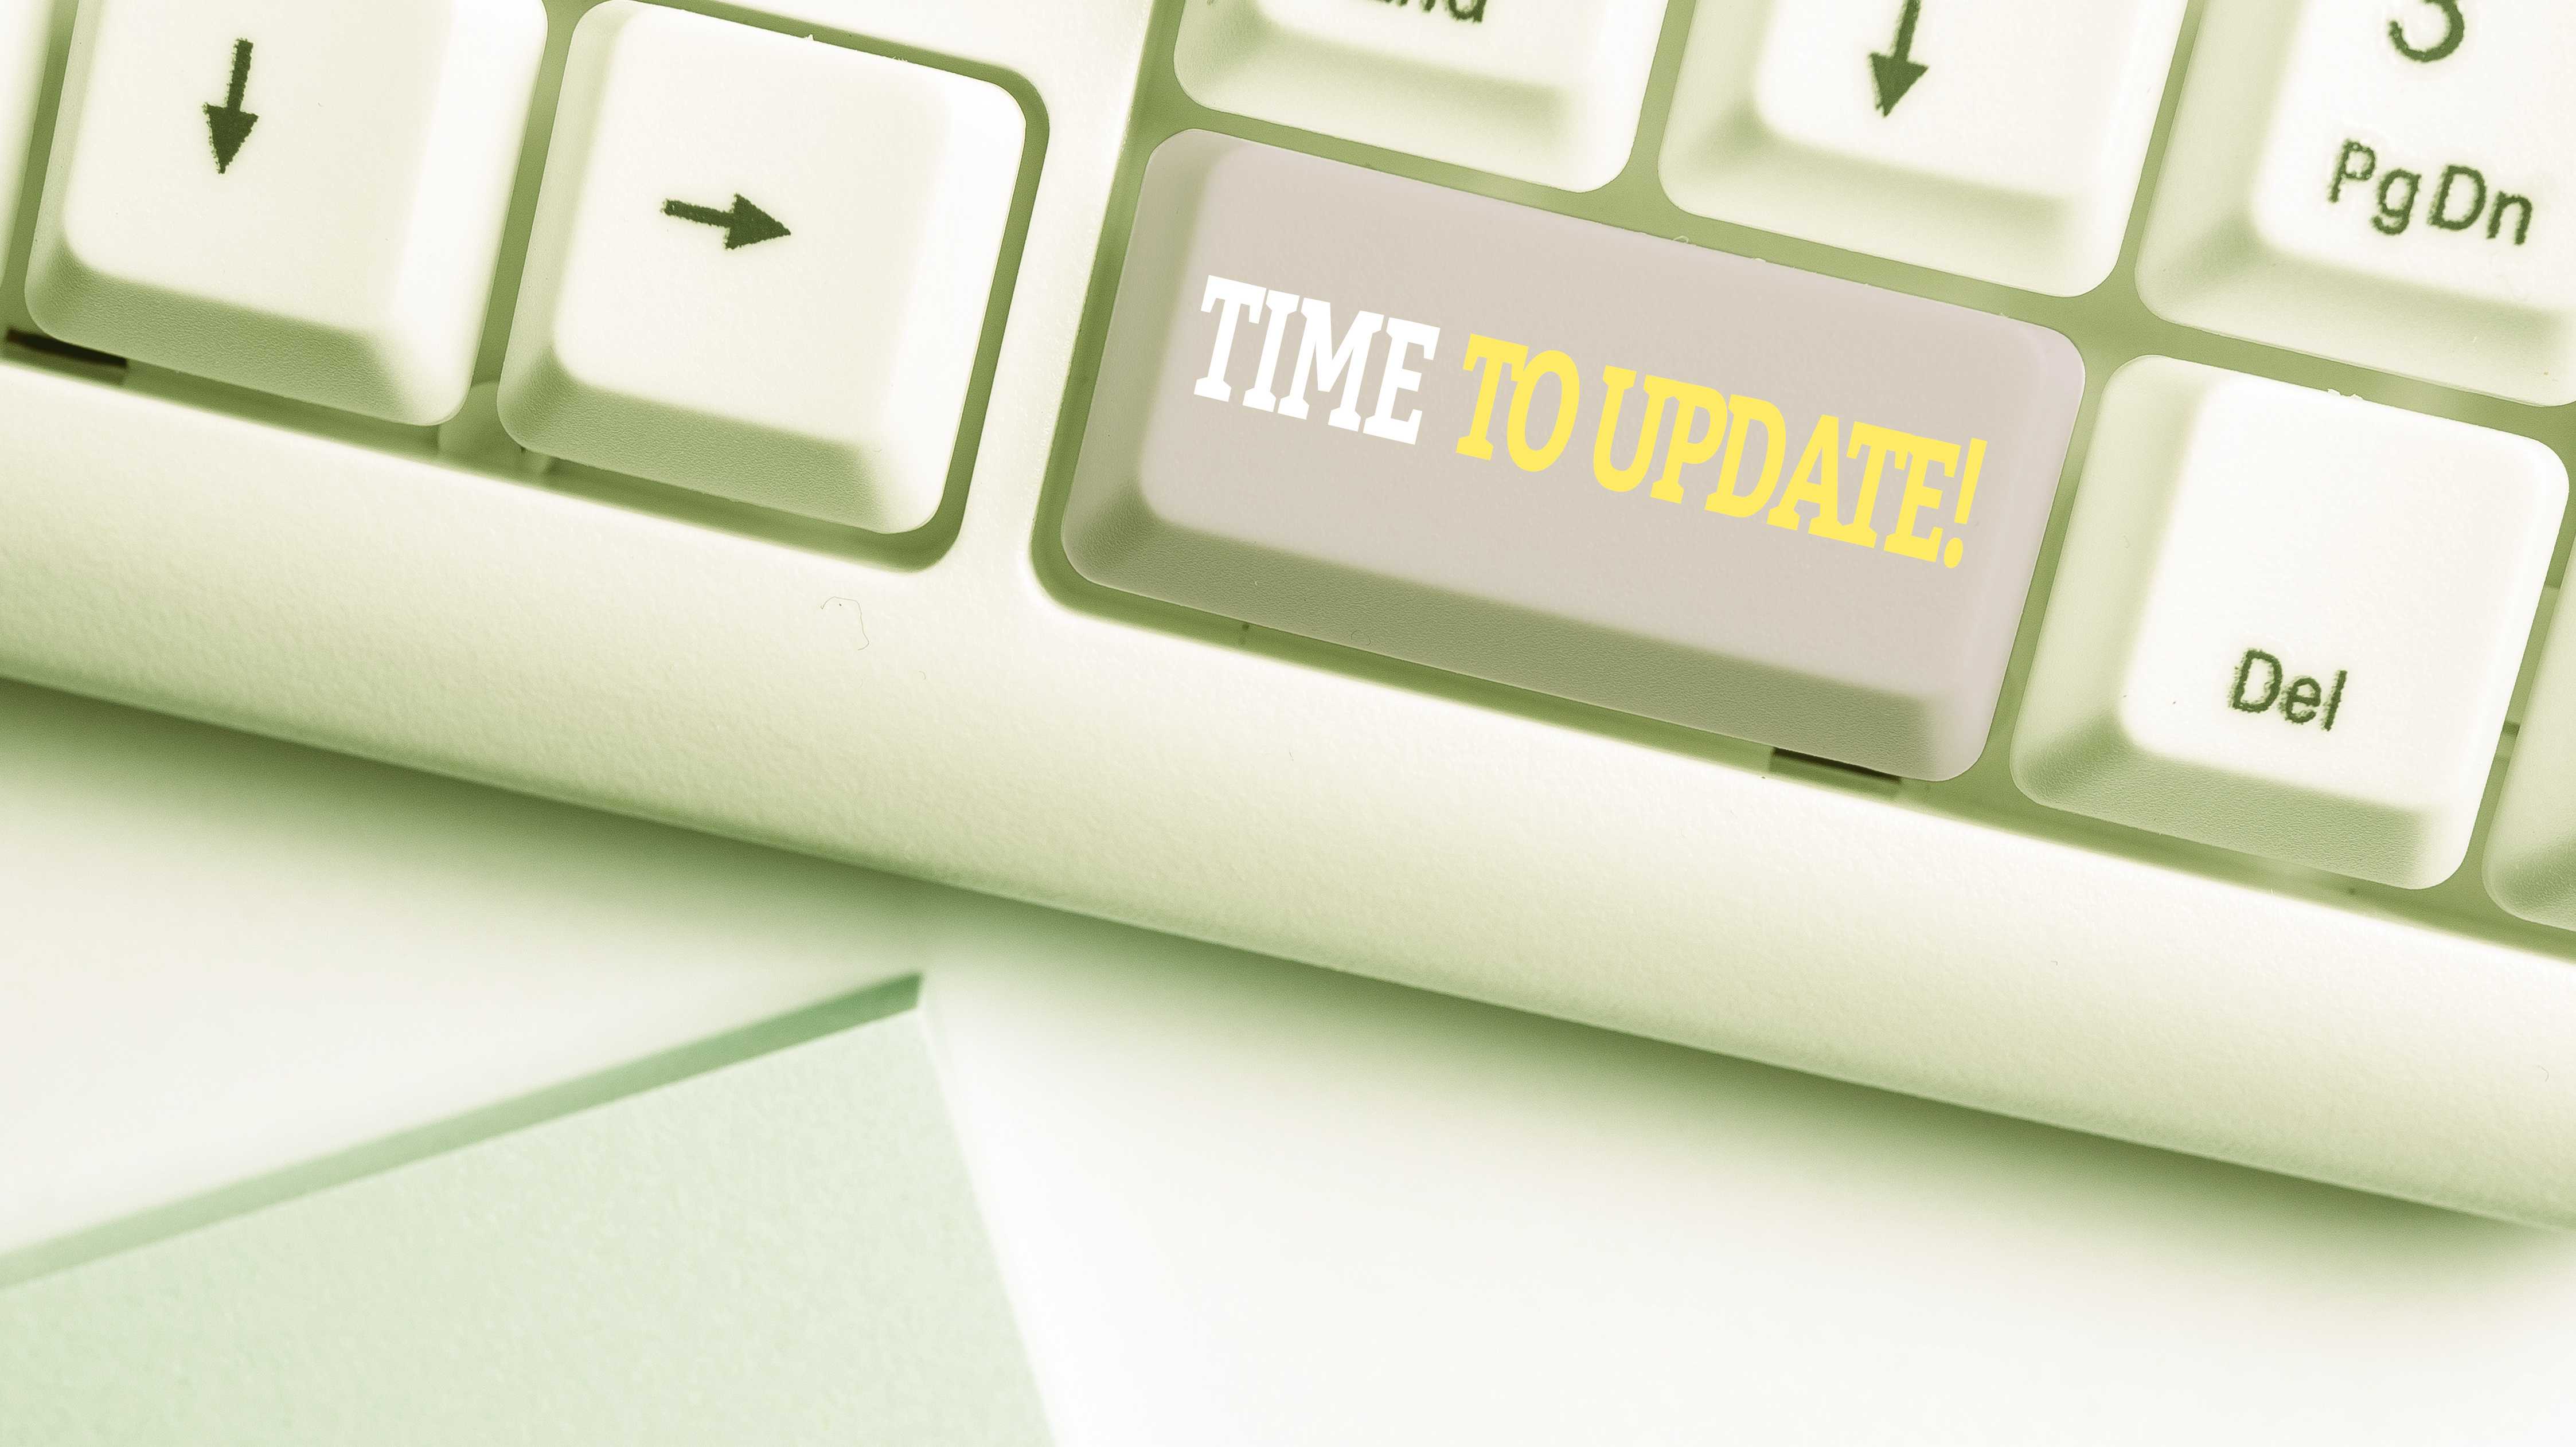 Eine Tastatur mit "Time to update" auf der Nulltaste des Ziffernblocks